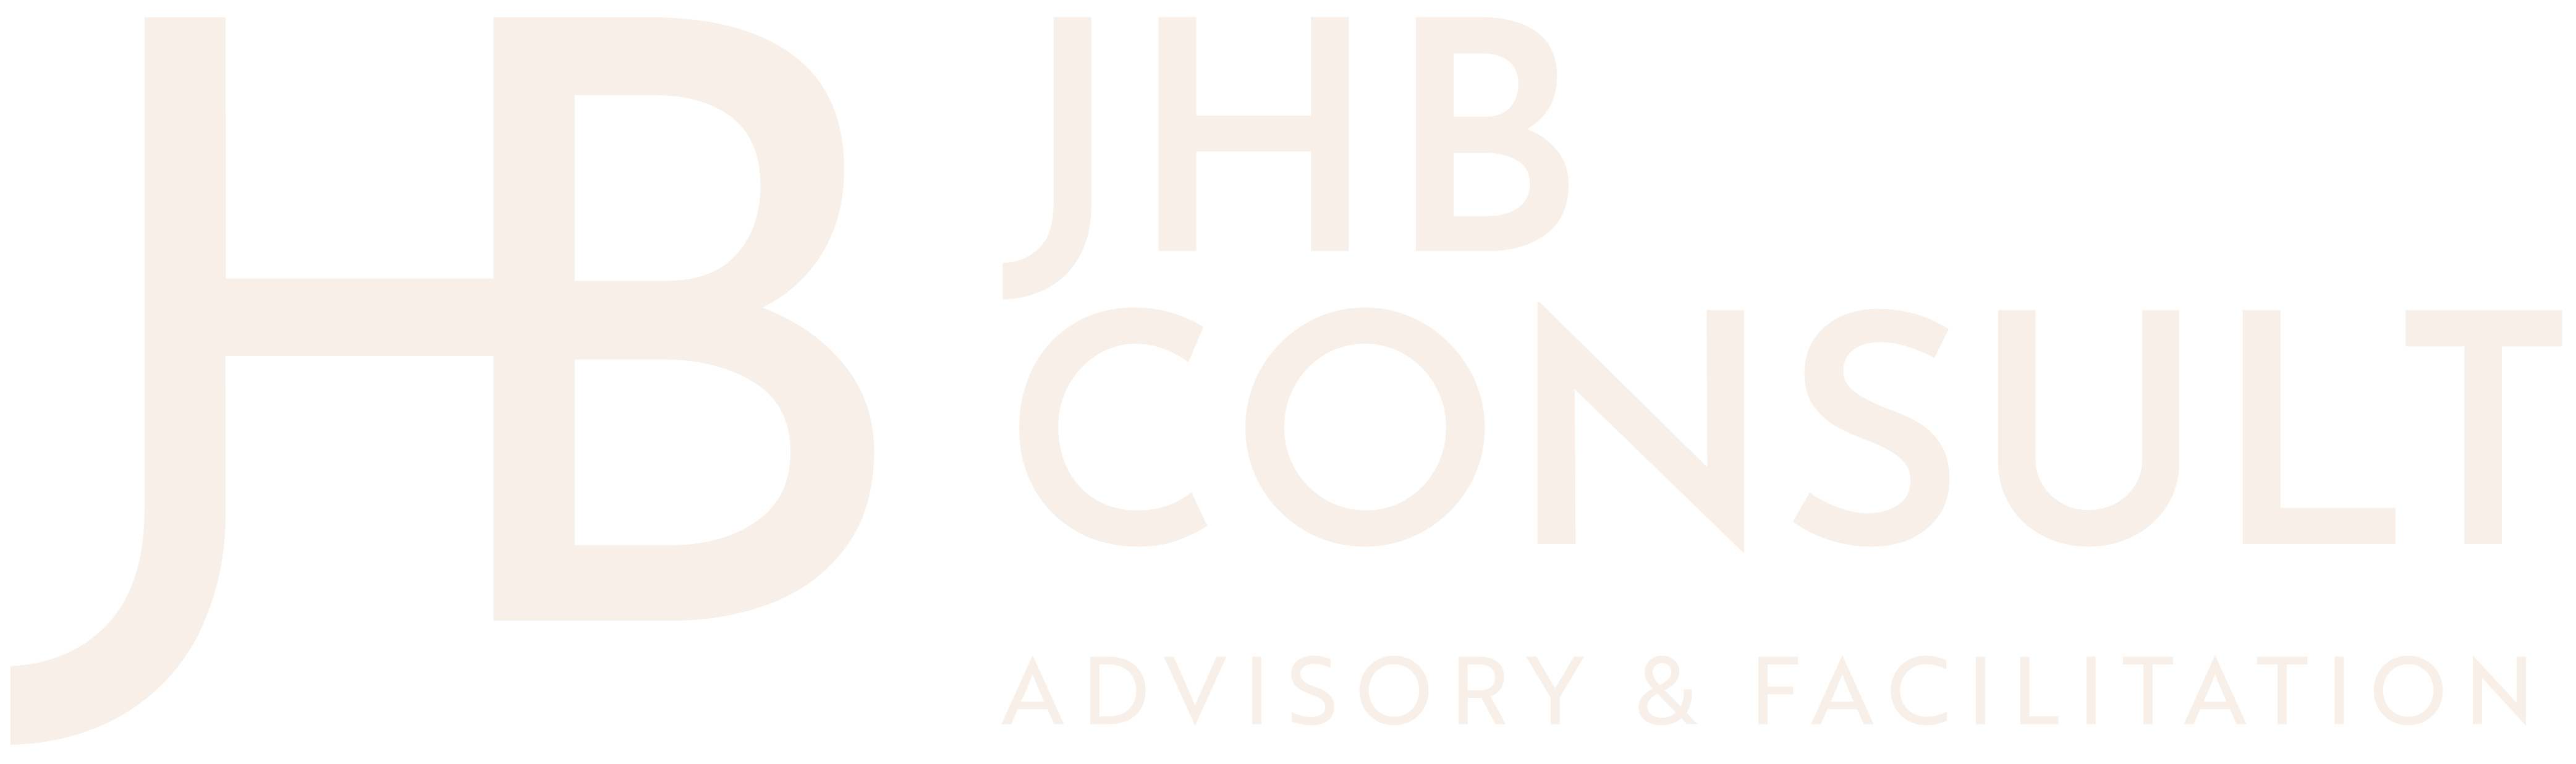 JHB Consult